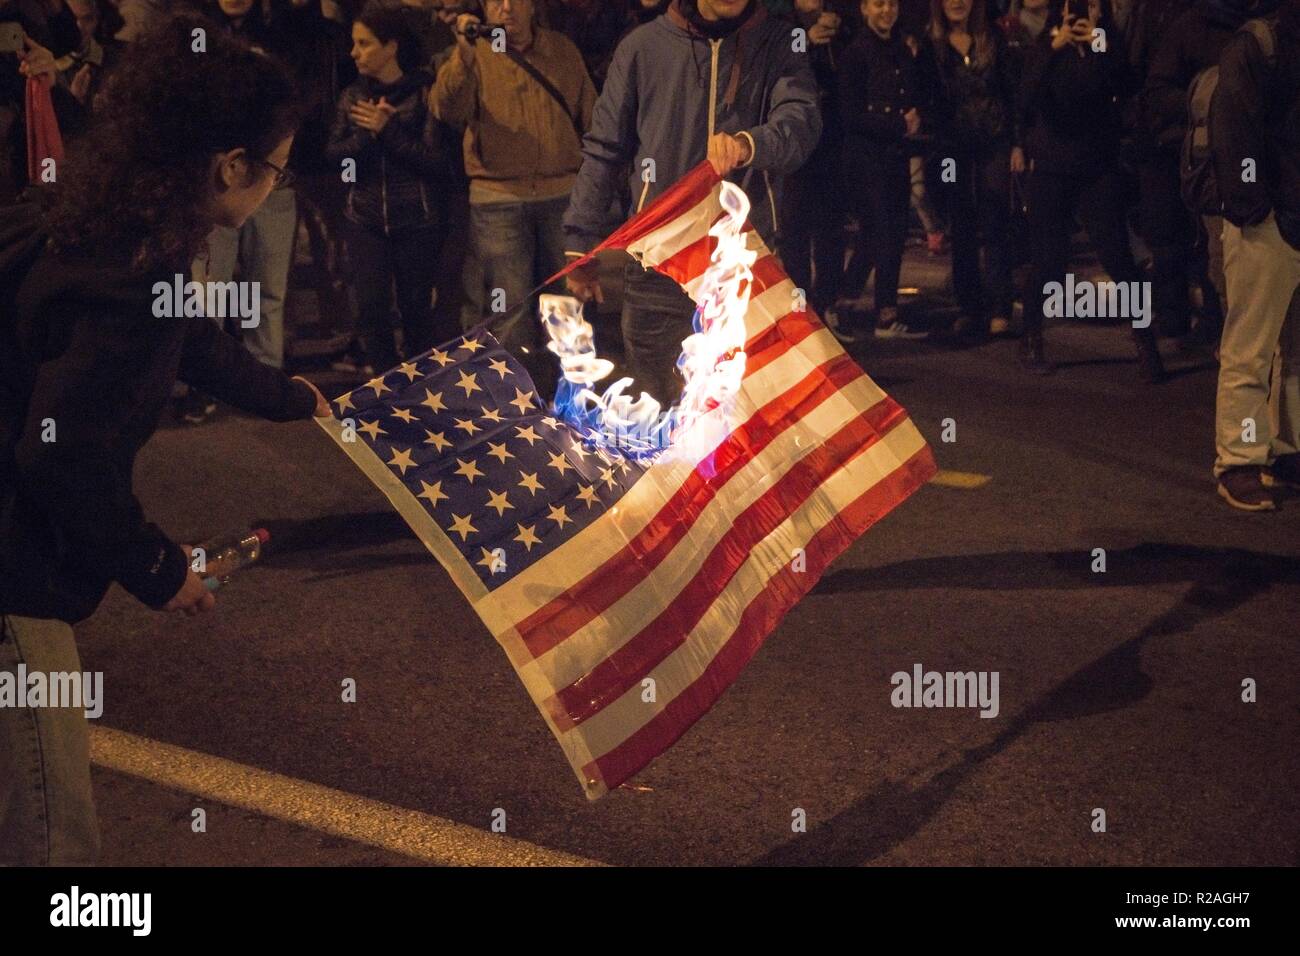 Les protestataires sont vu brûler un drapeau américain pendant la manifestation. Des milliers de personnes ont démontré au cours de la 45e anniversaire de l'École Polytechnique soulèvement contre la junte militaire en 1973. Banque D'Images